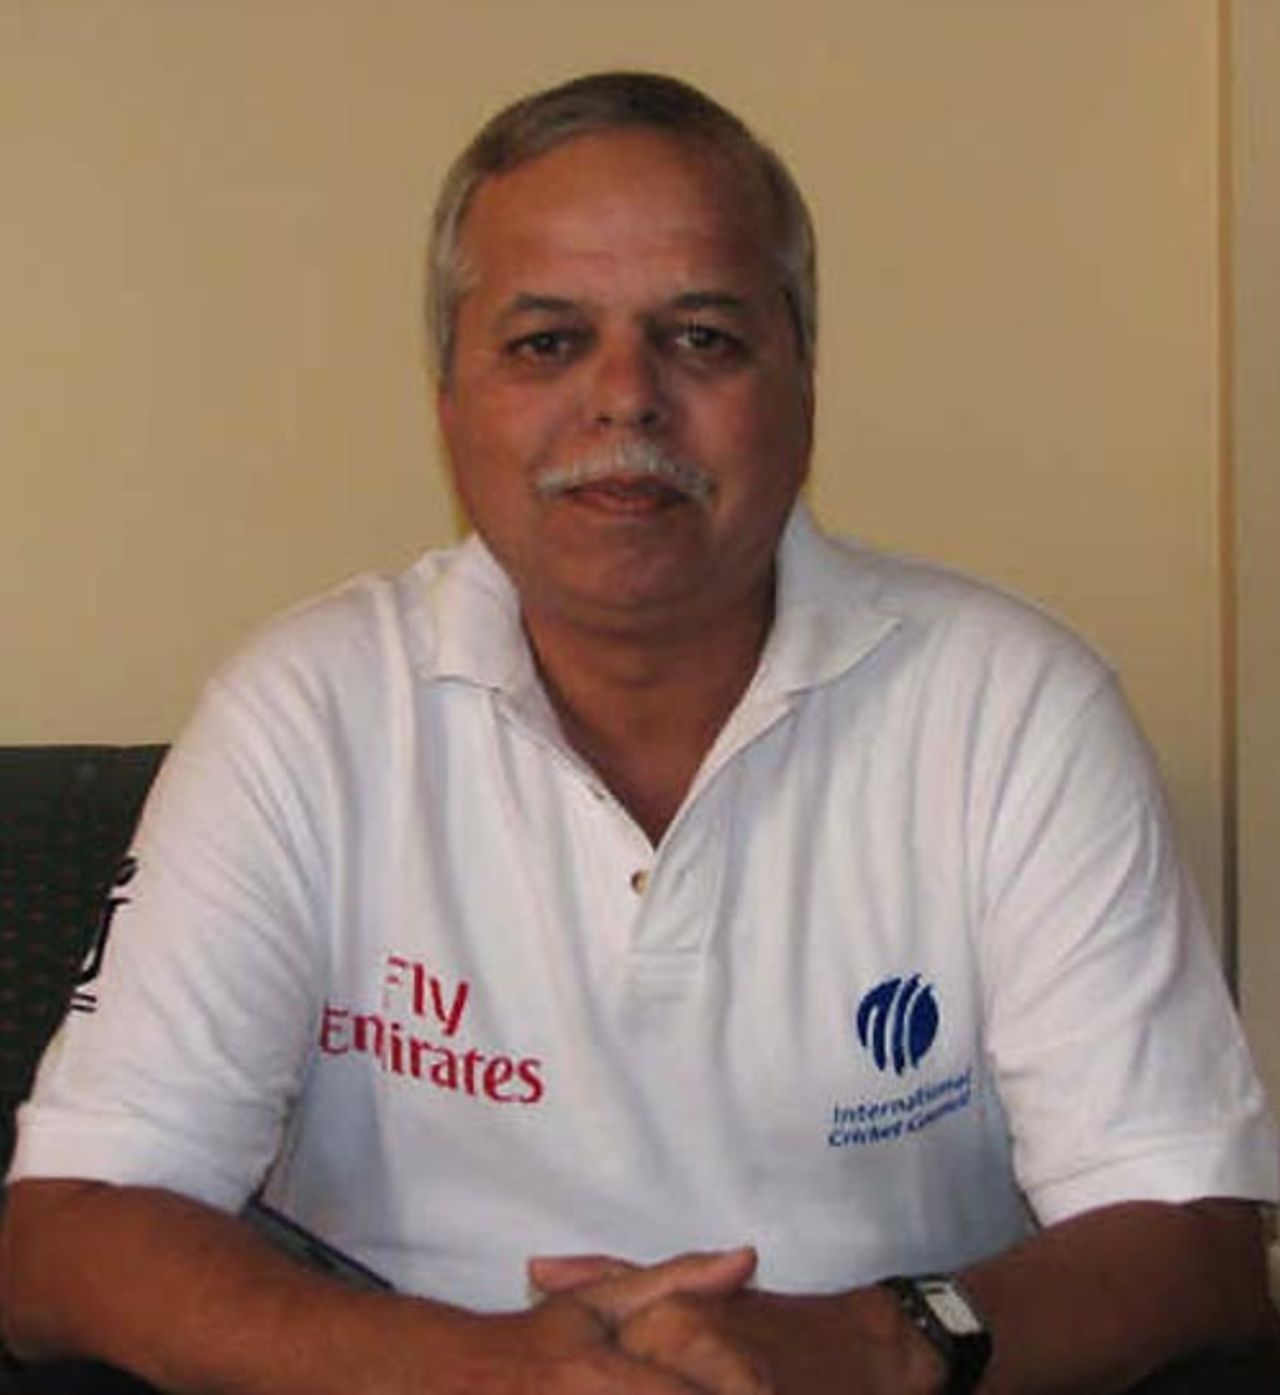 Vinayak Kulkarni, headshot, July 9, 2008